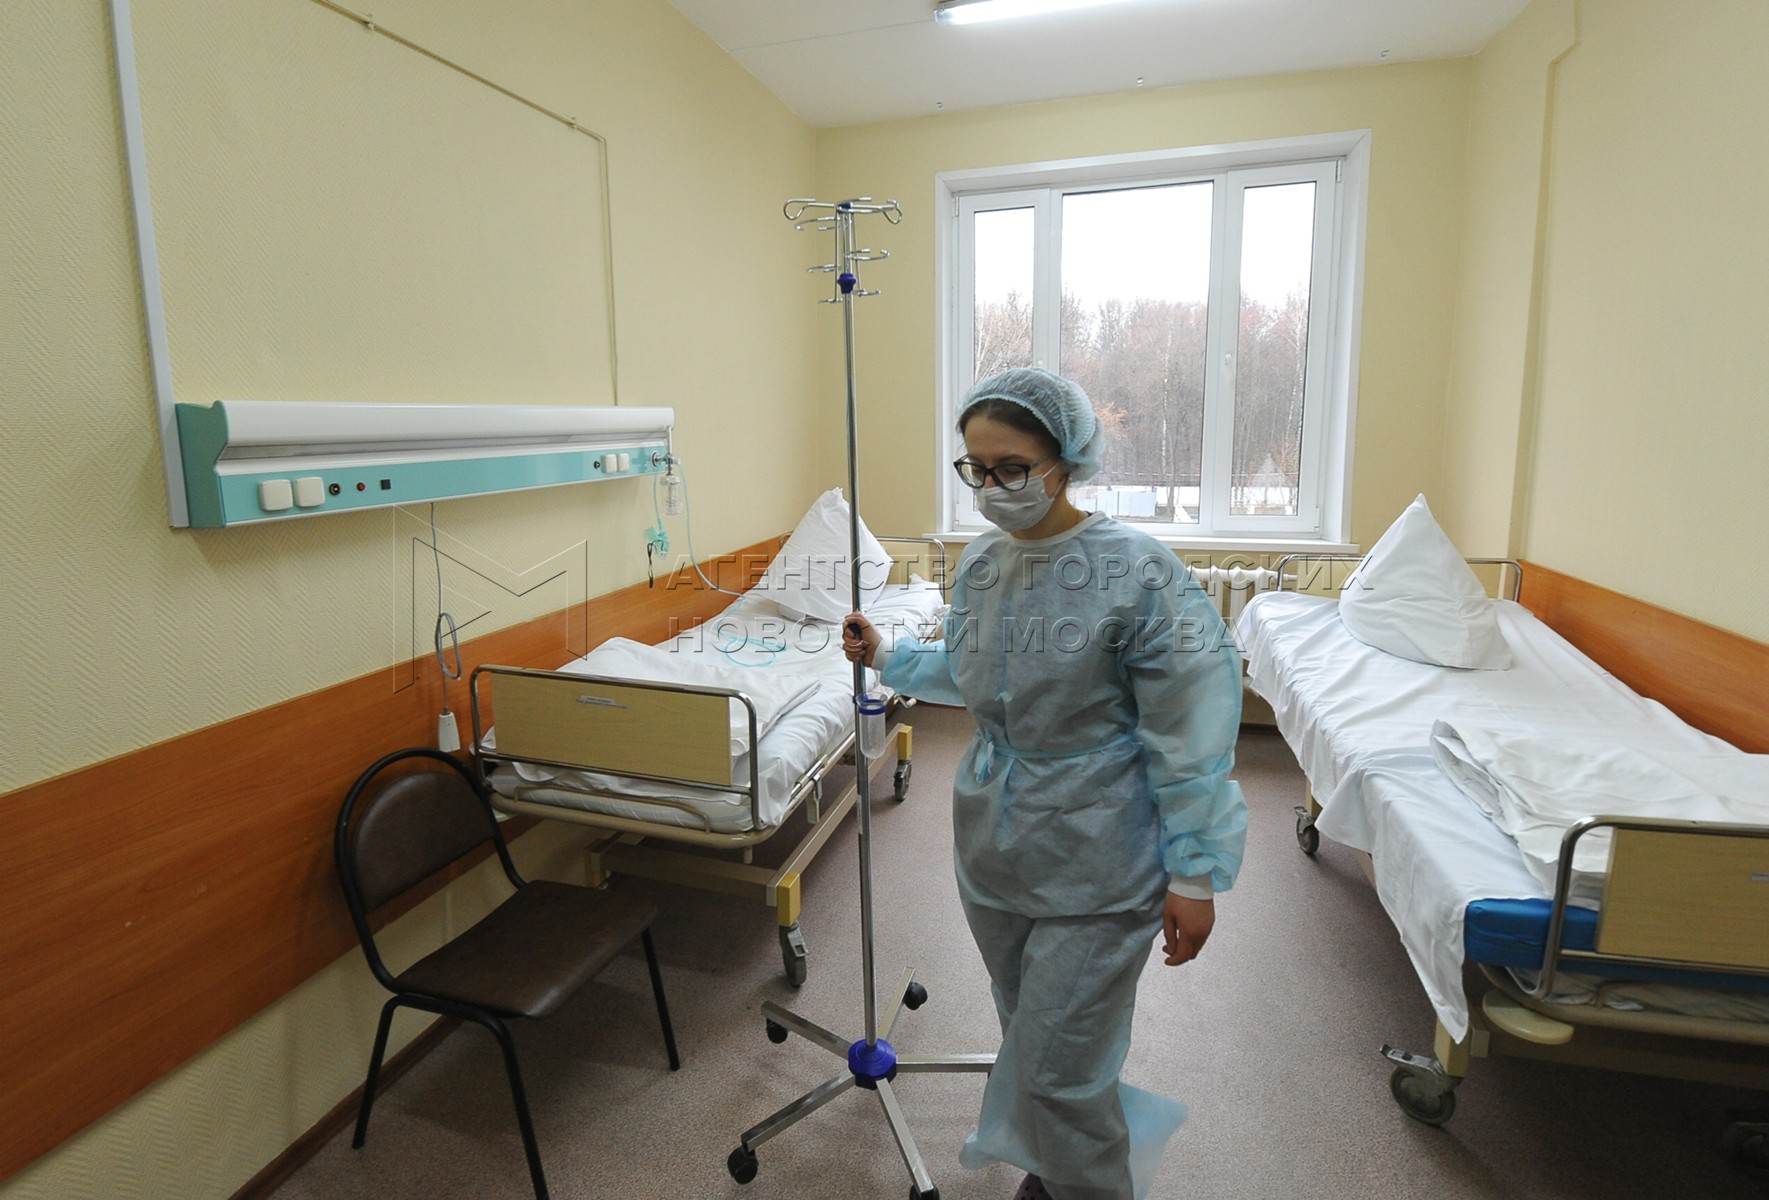 Узнать в какой больнице человек в москве. Палаты в больницах России. Палата для инфекционных больных.